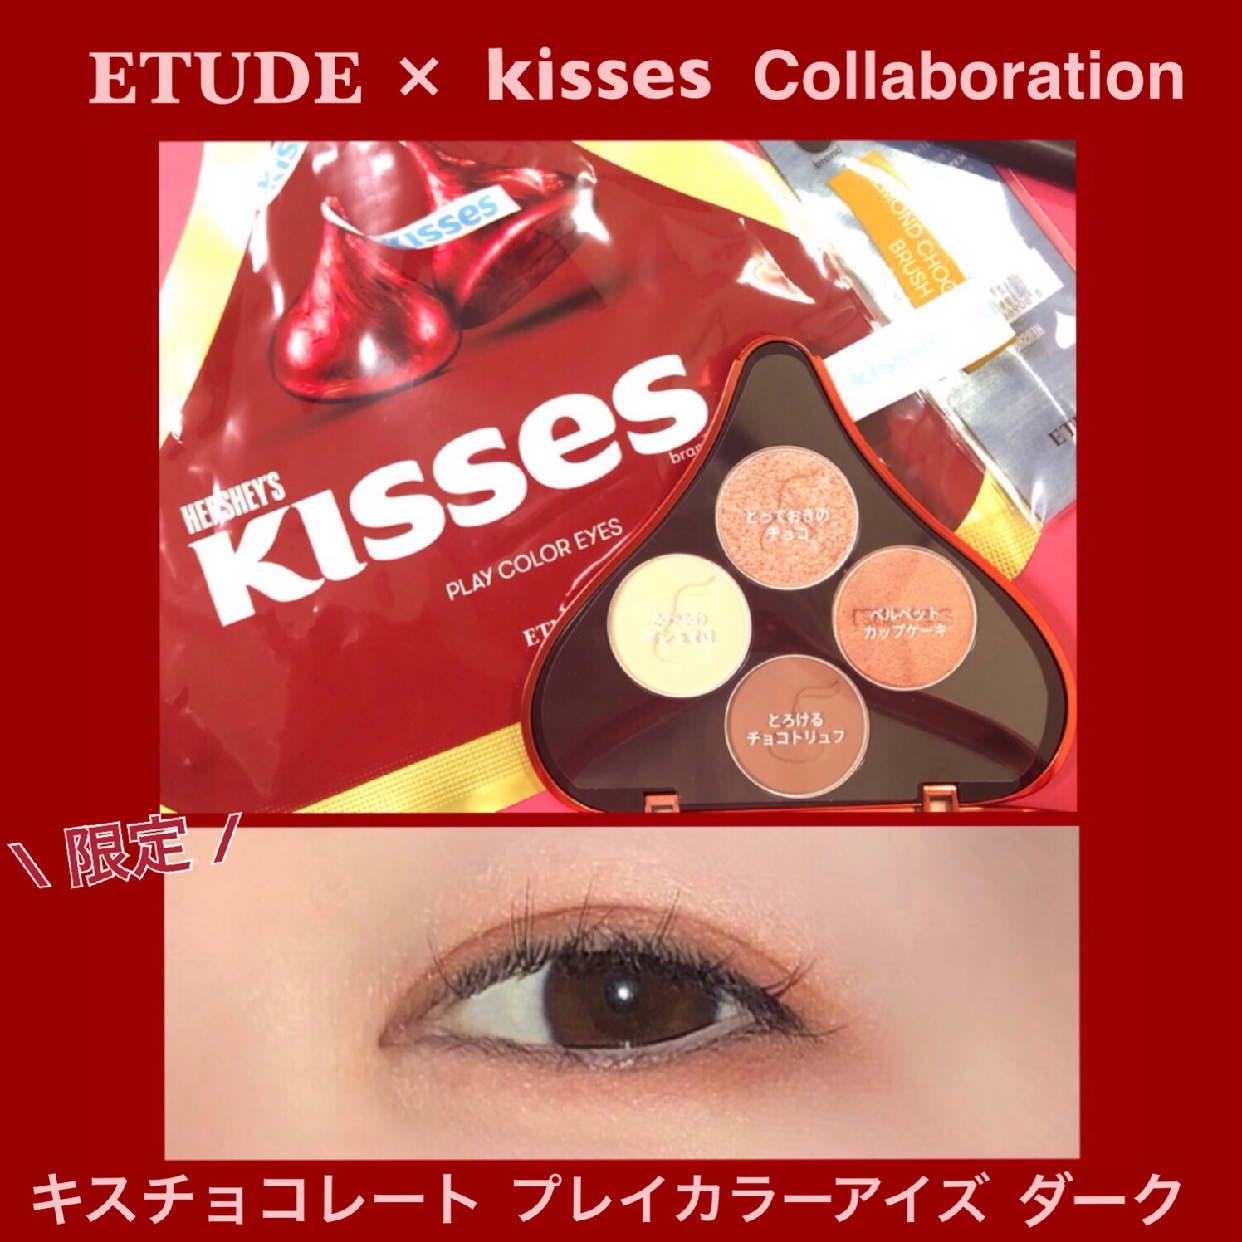 ETUDE HOUSE(エチュードハウス) キスチョコレート プレイカラーアイズの気になる点・悪い点・デメリットに関するmomokoさんの口コミ画像1